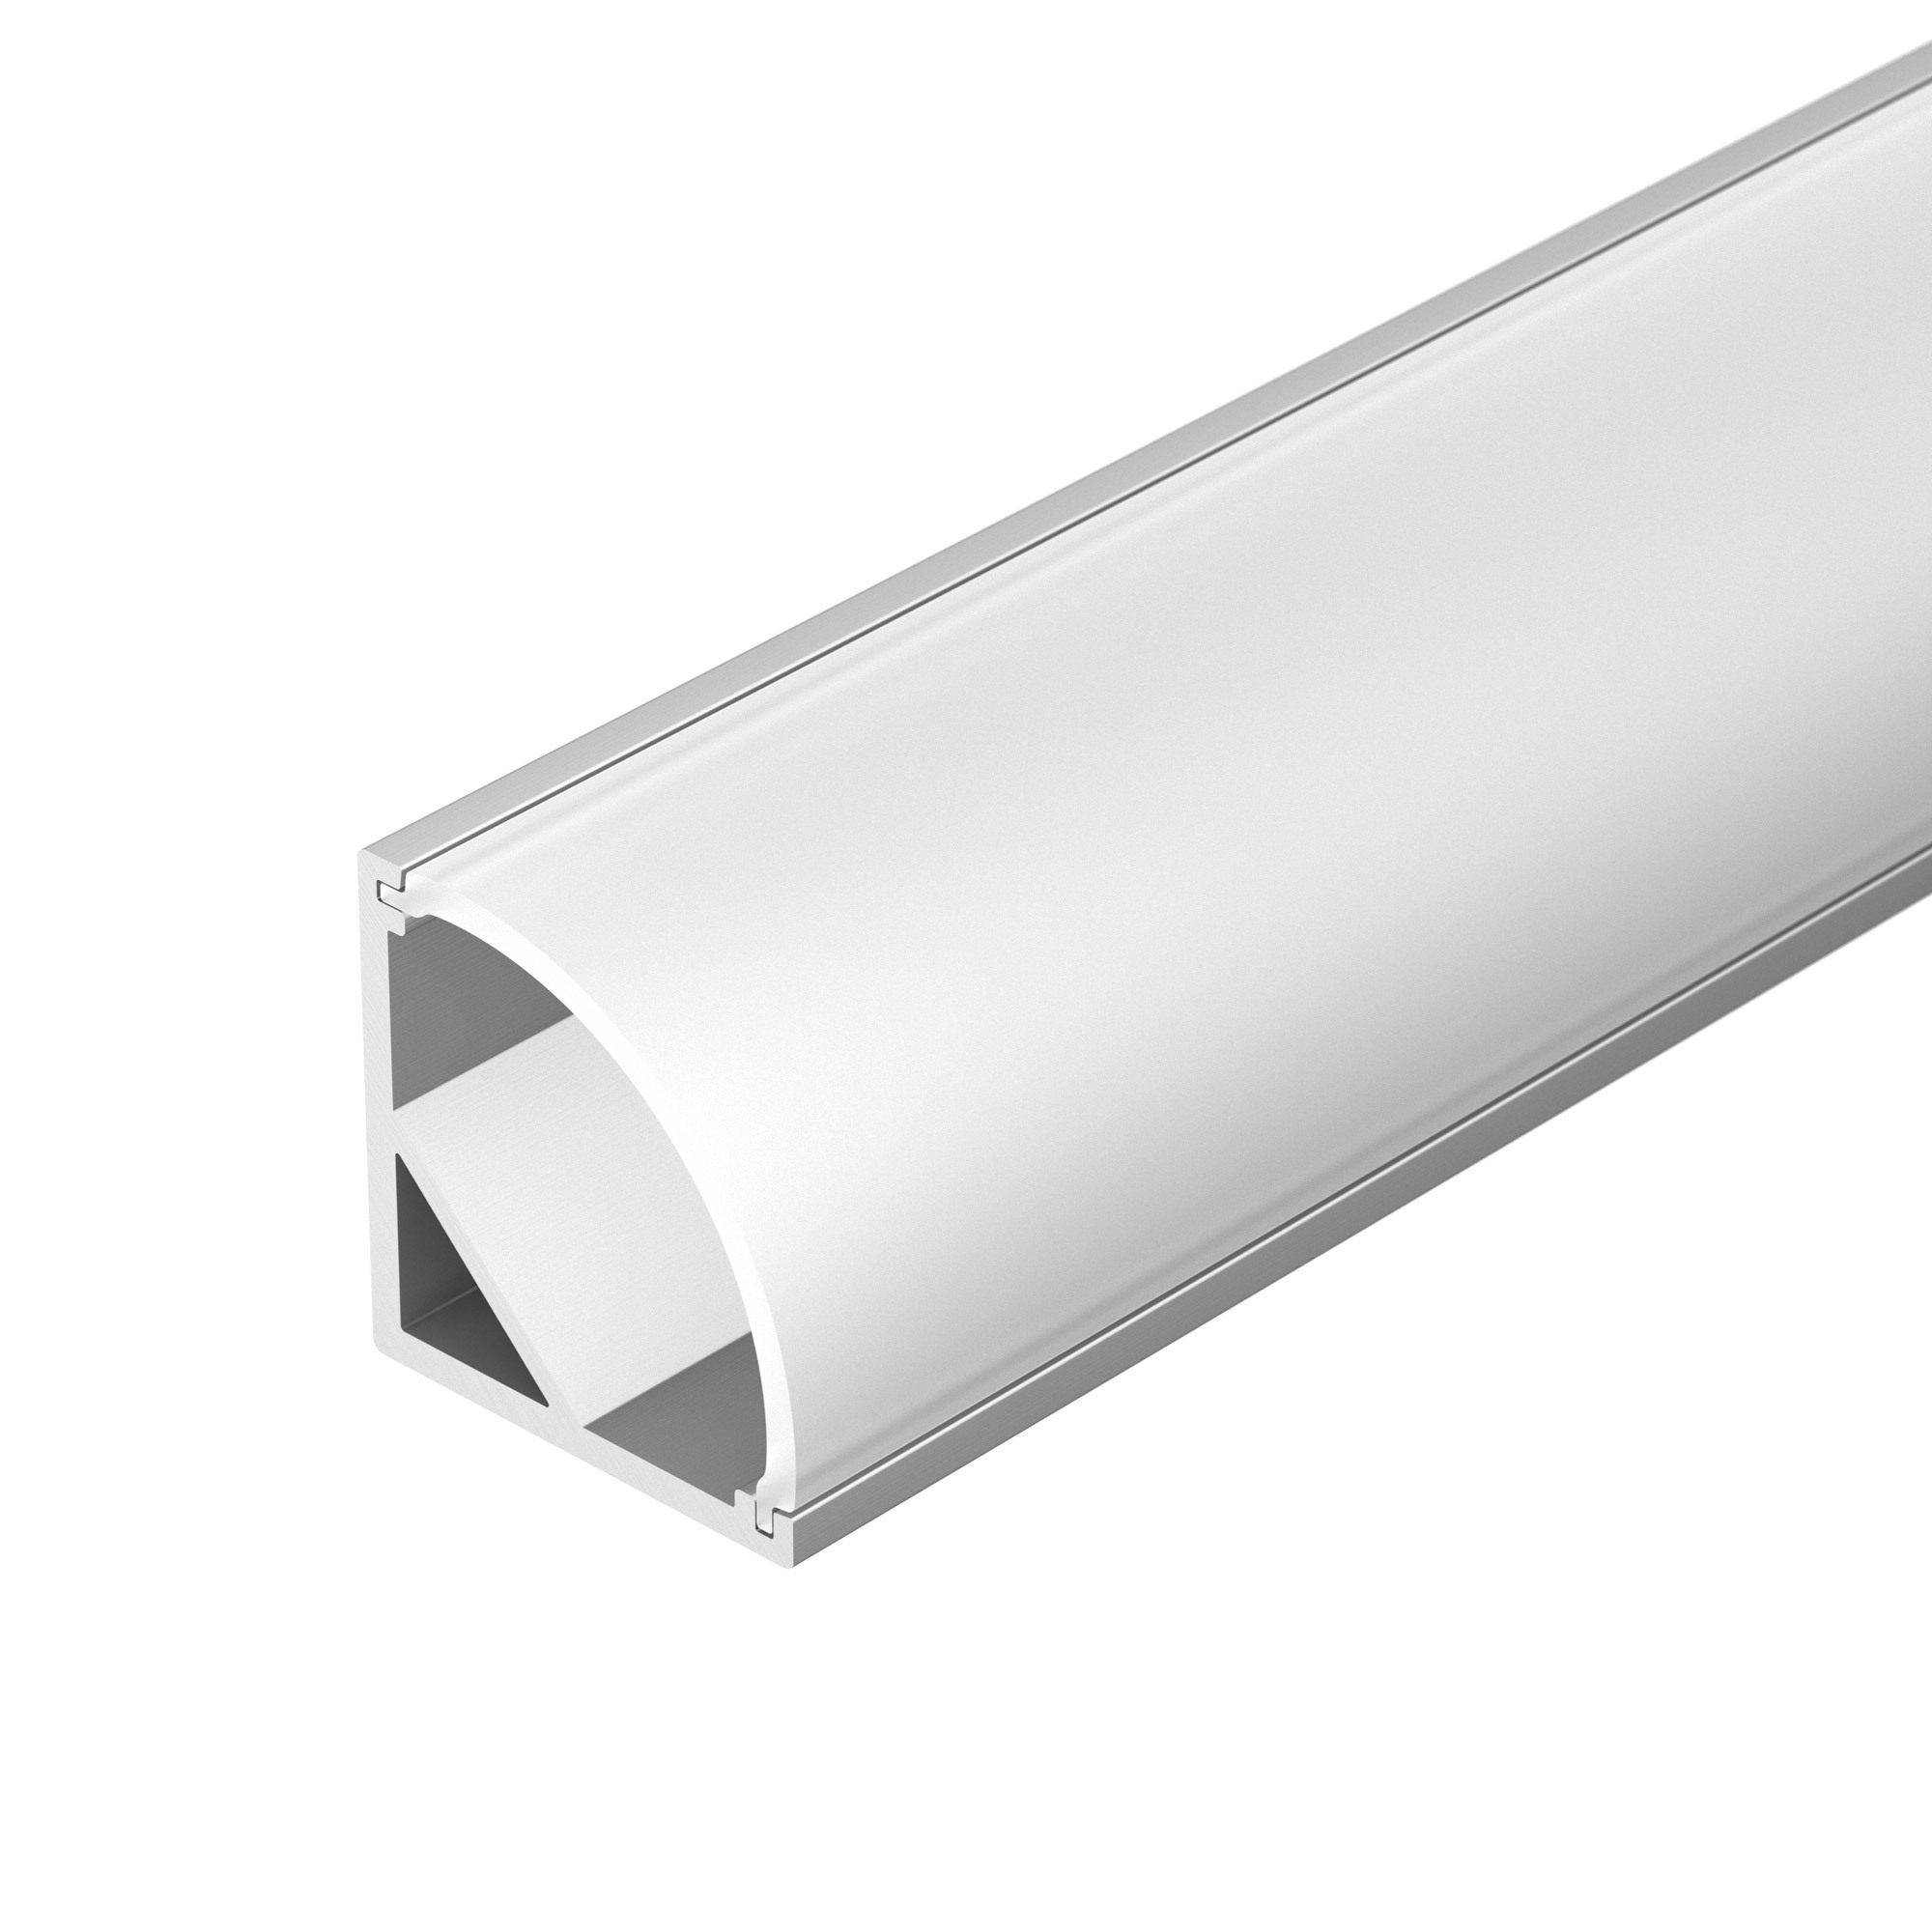 Профиль ARH-KANT-H16-2000 ANOD (Arlight, Алюминий) профиль для светодиодной ленты алюминиевый для порогов lc lpp 0636 2 anod